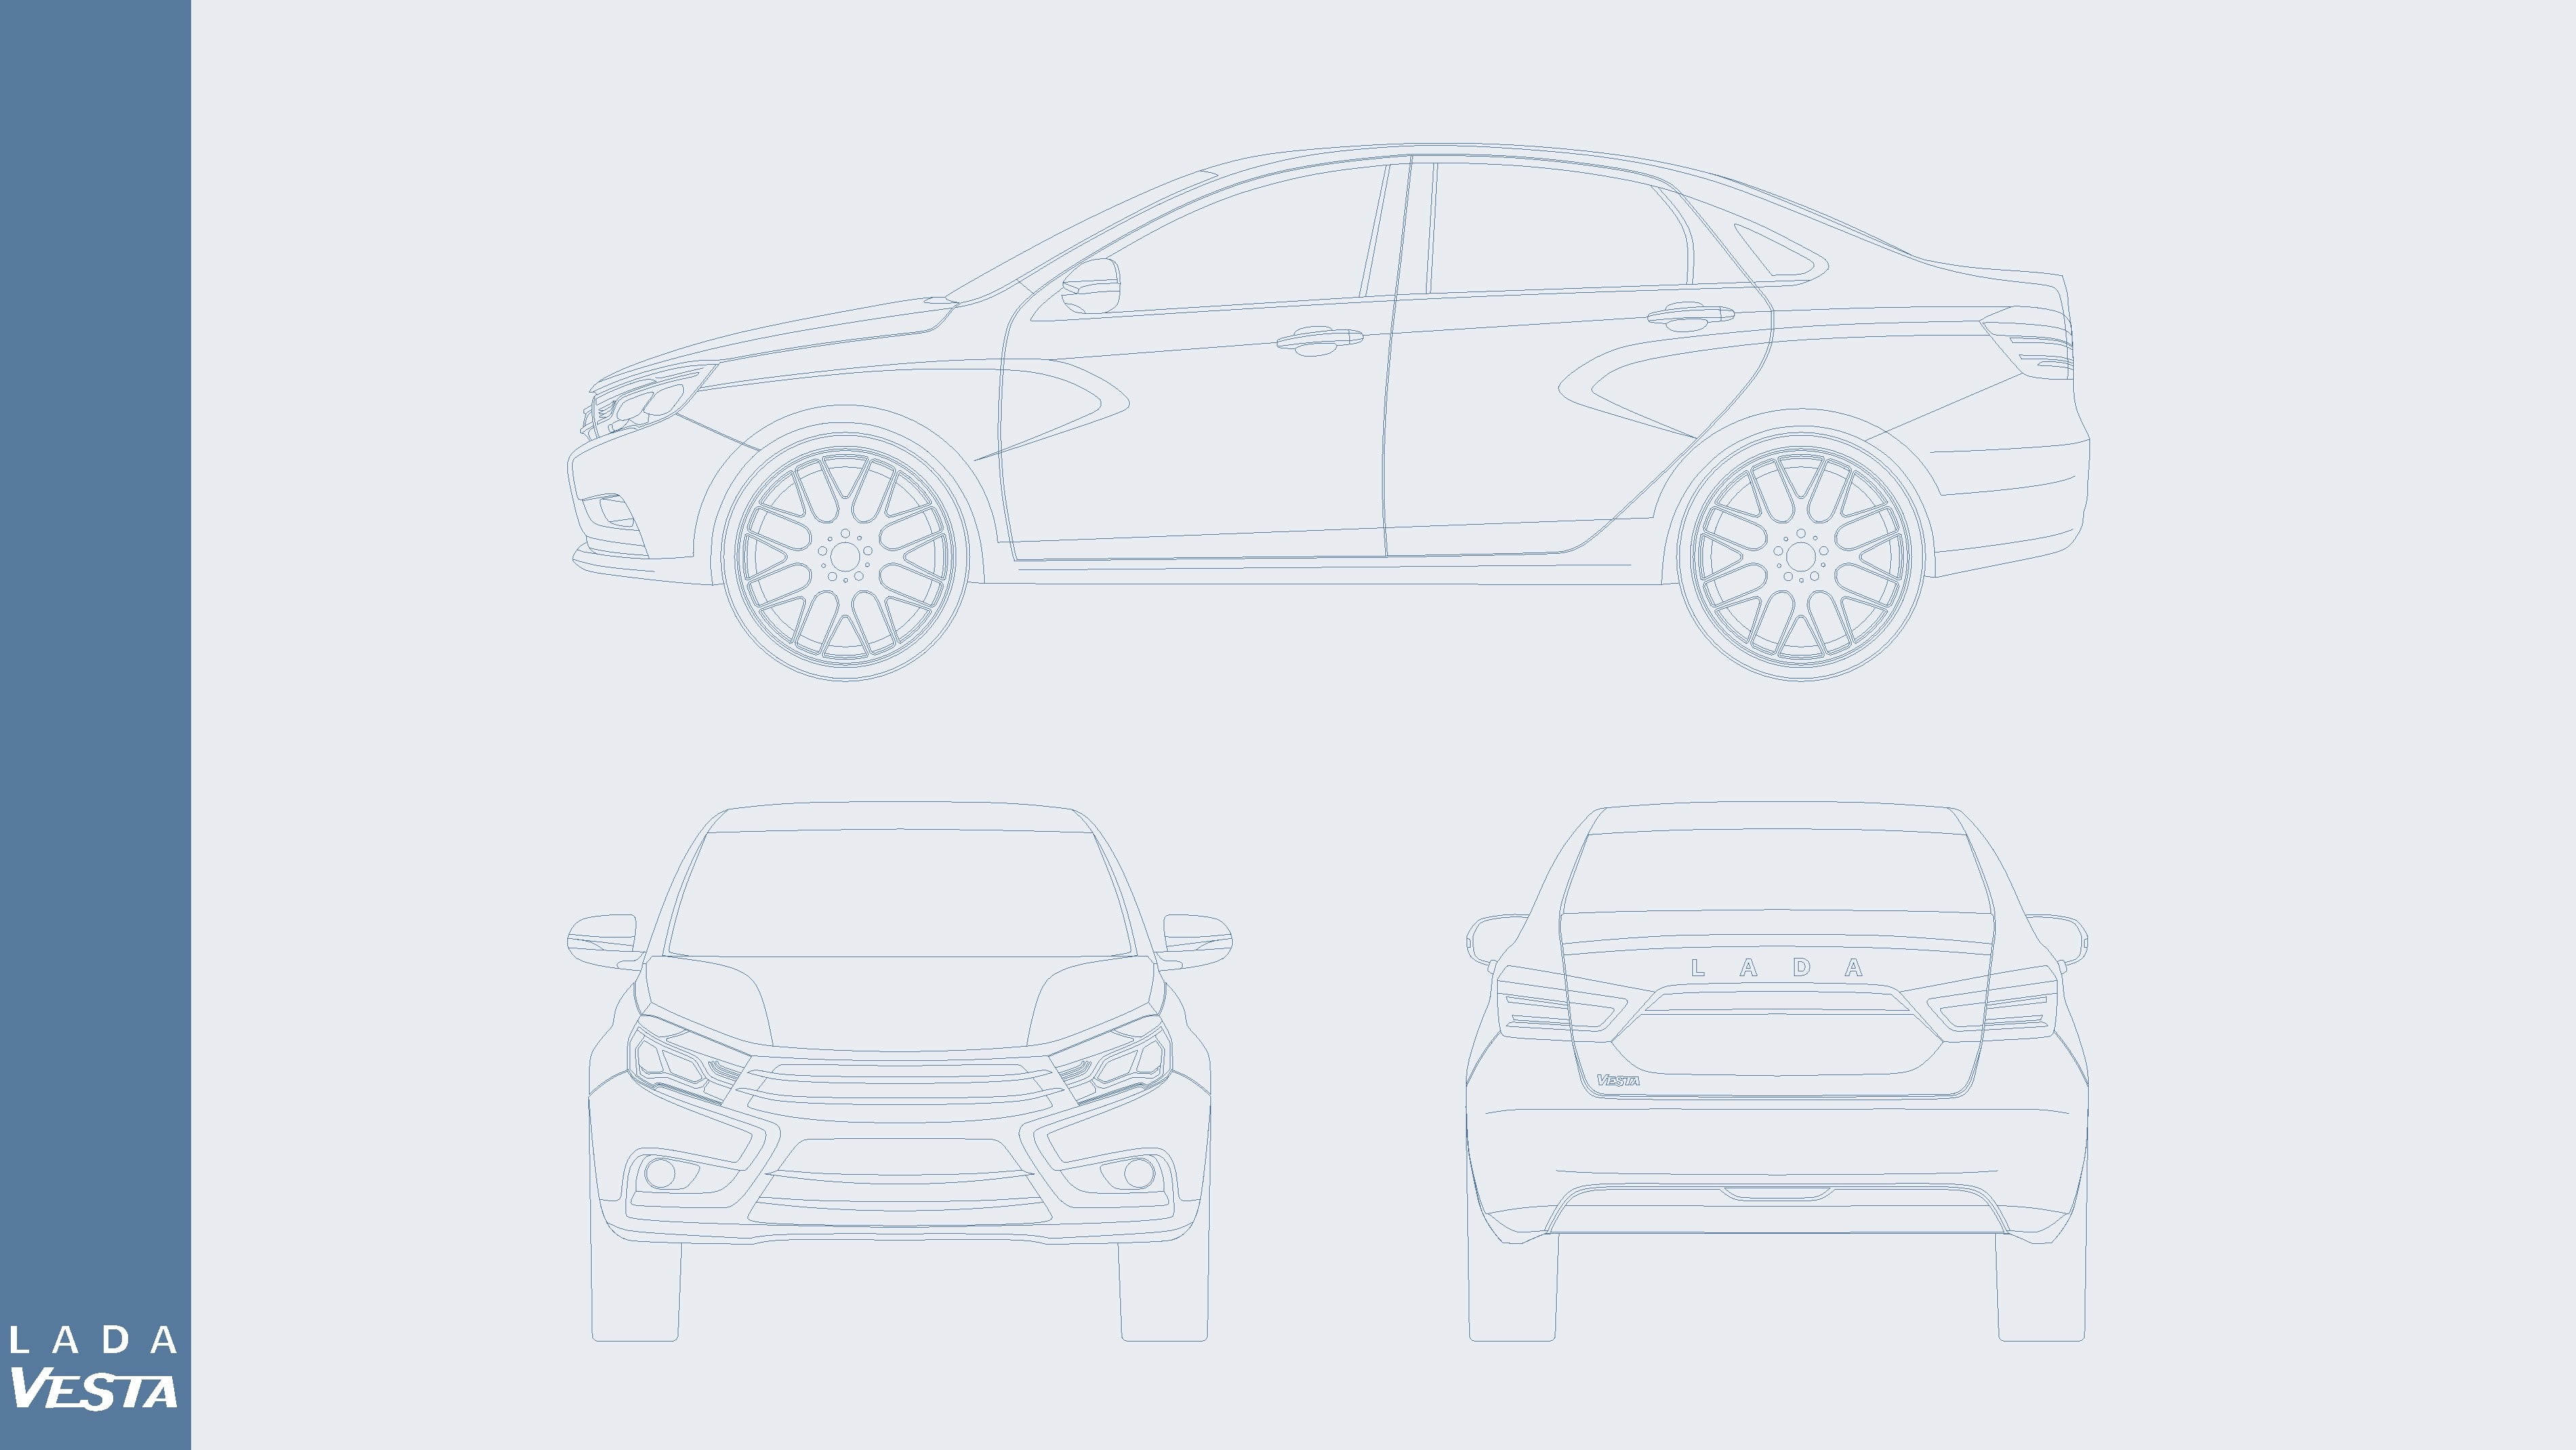 sedan illustration, vector, drawing, LADA, Vesta, concept cars